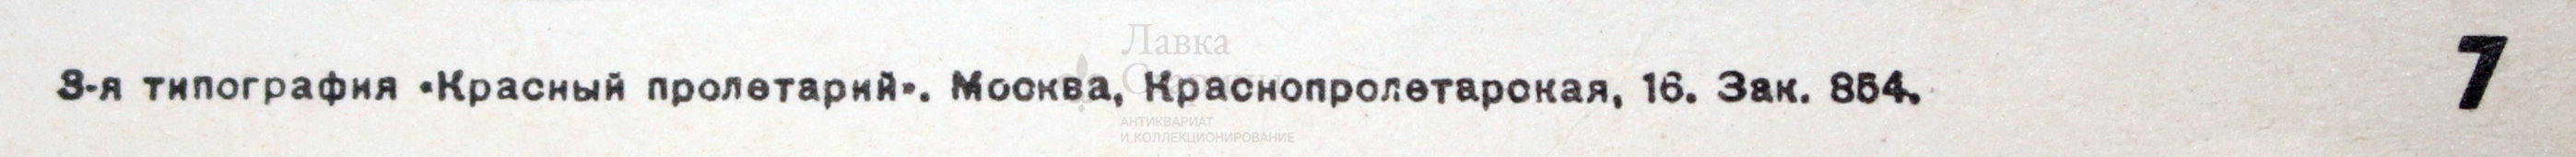 Советский агитационный плакат «Юноши и девушки, защищайте свободу, родину и честь, завоеванные вашими отцами 1917», Москва, репринт 1970-ых годов